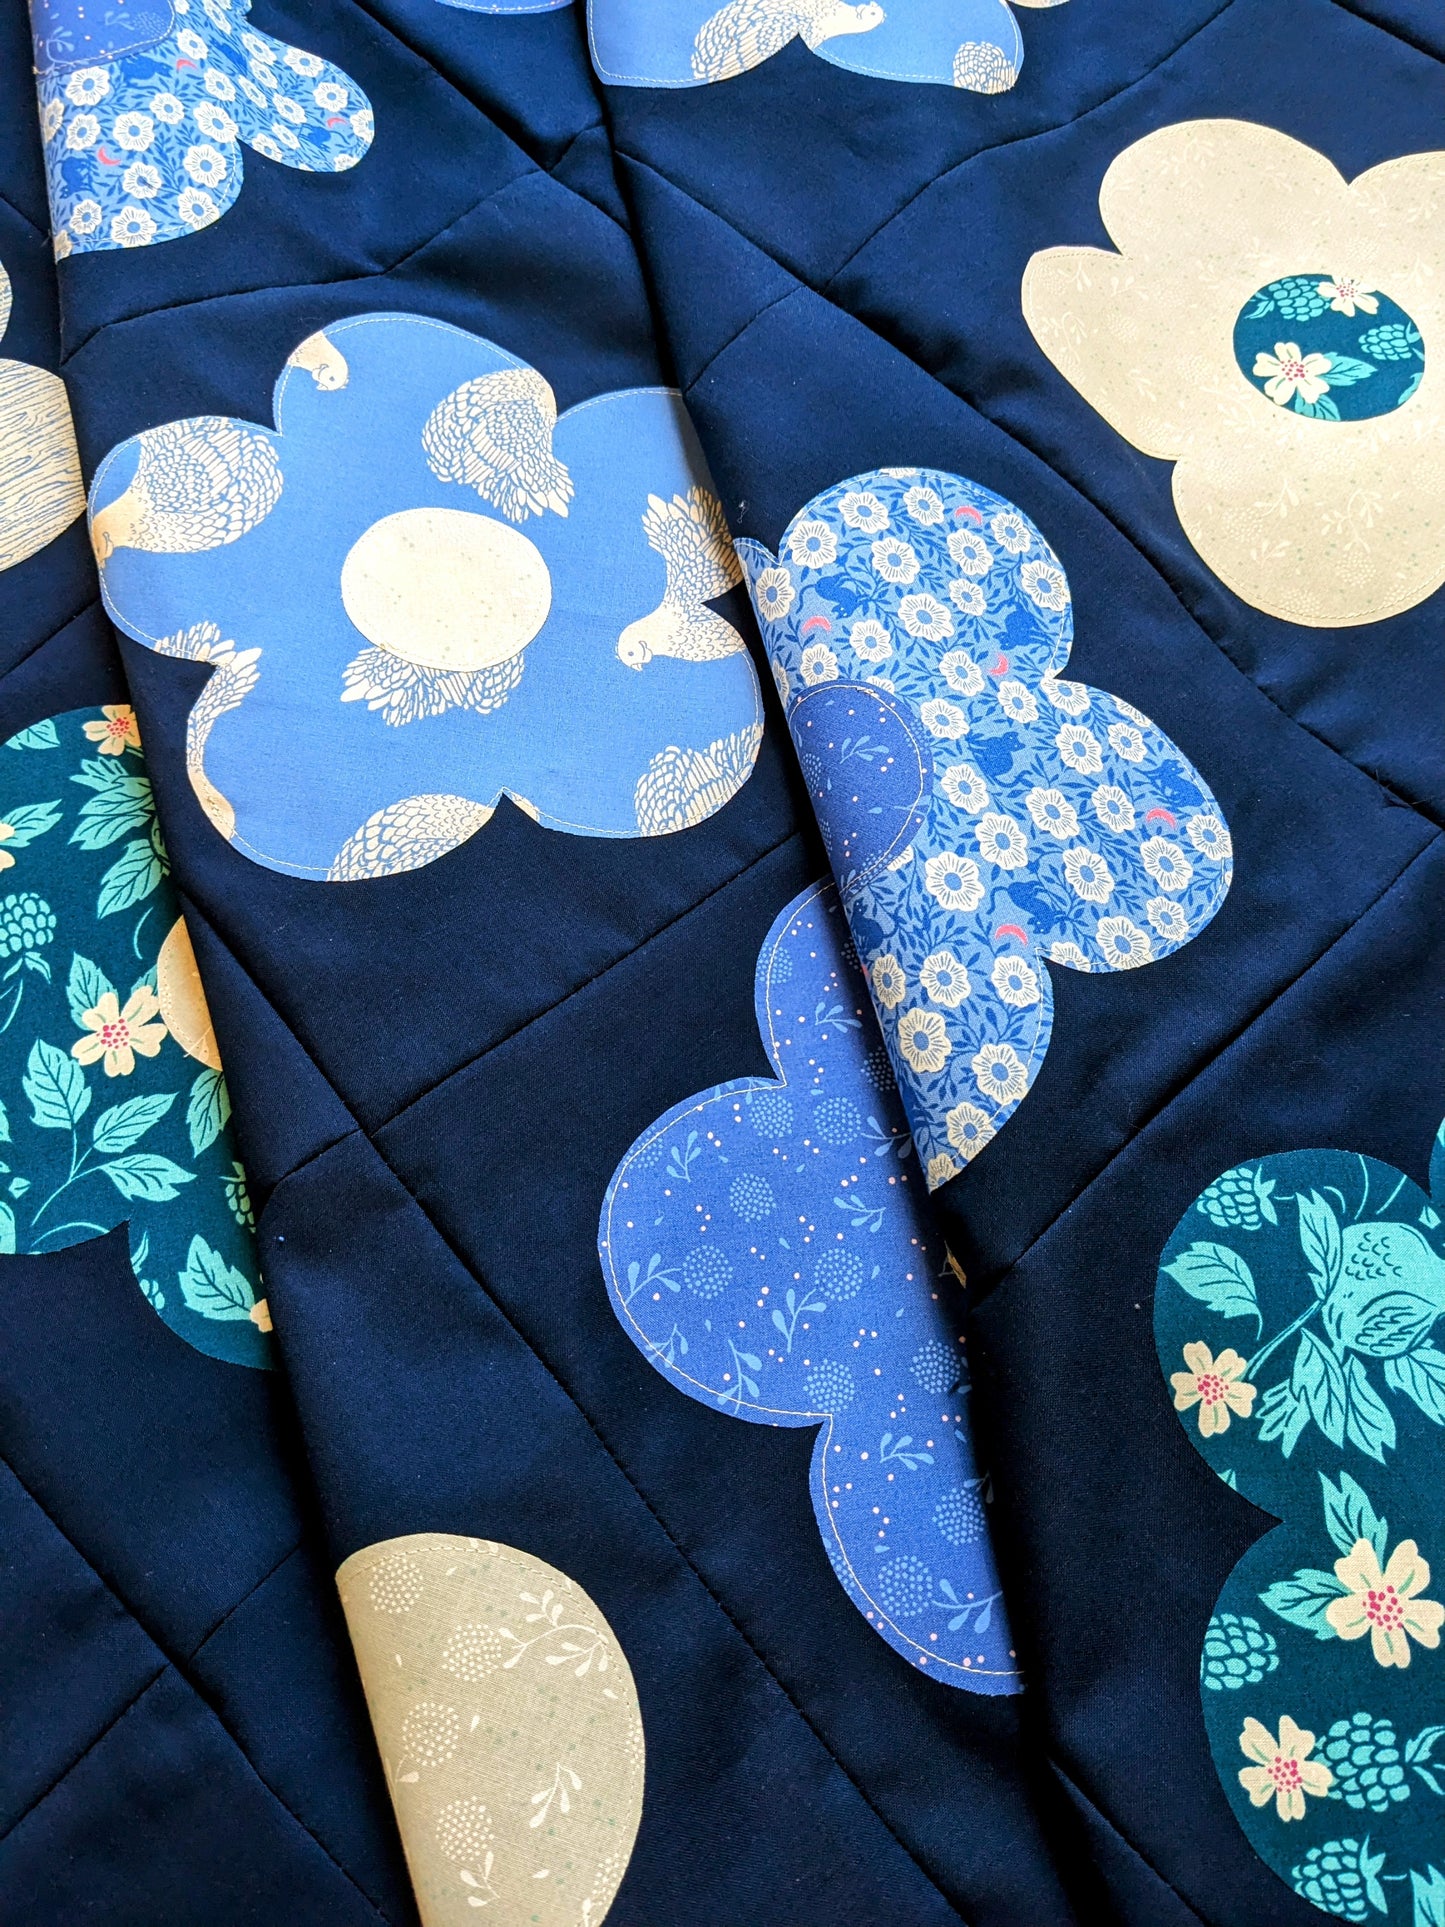 Nora's Garden Quilt Pattern (Digital Download)